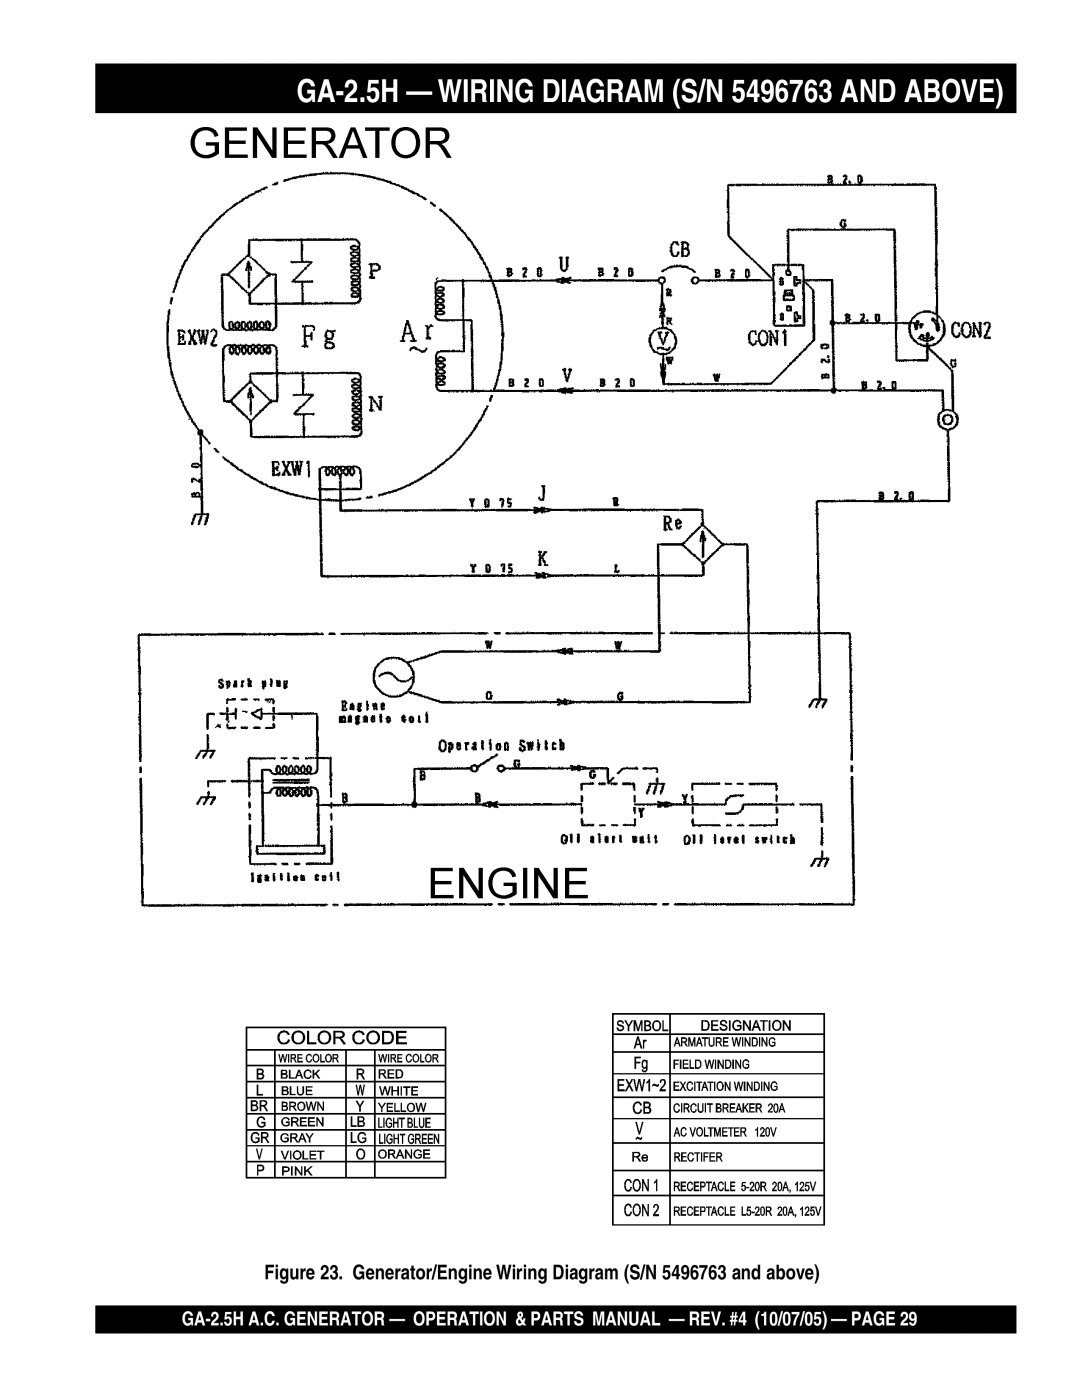 Honda Power Equipment manual GA-2.5H Wiring Diagram S/N 5496763 and Above 